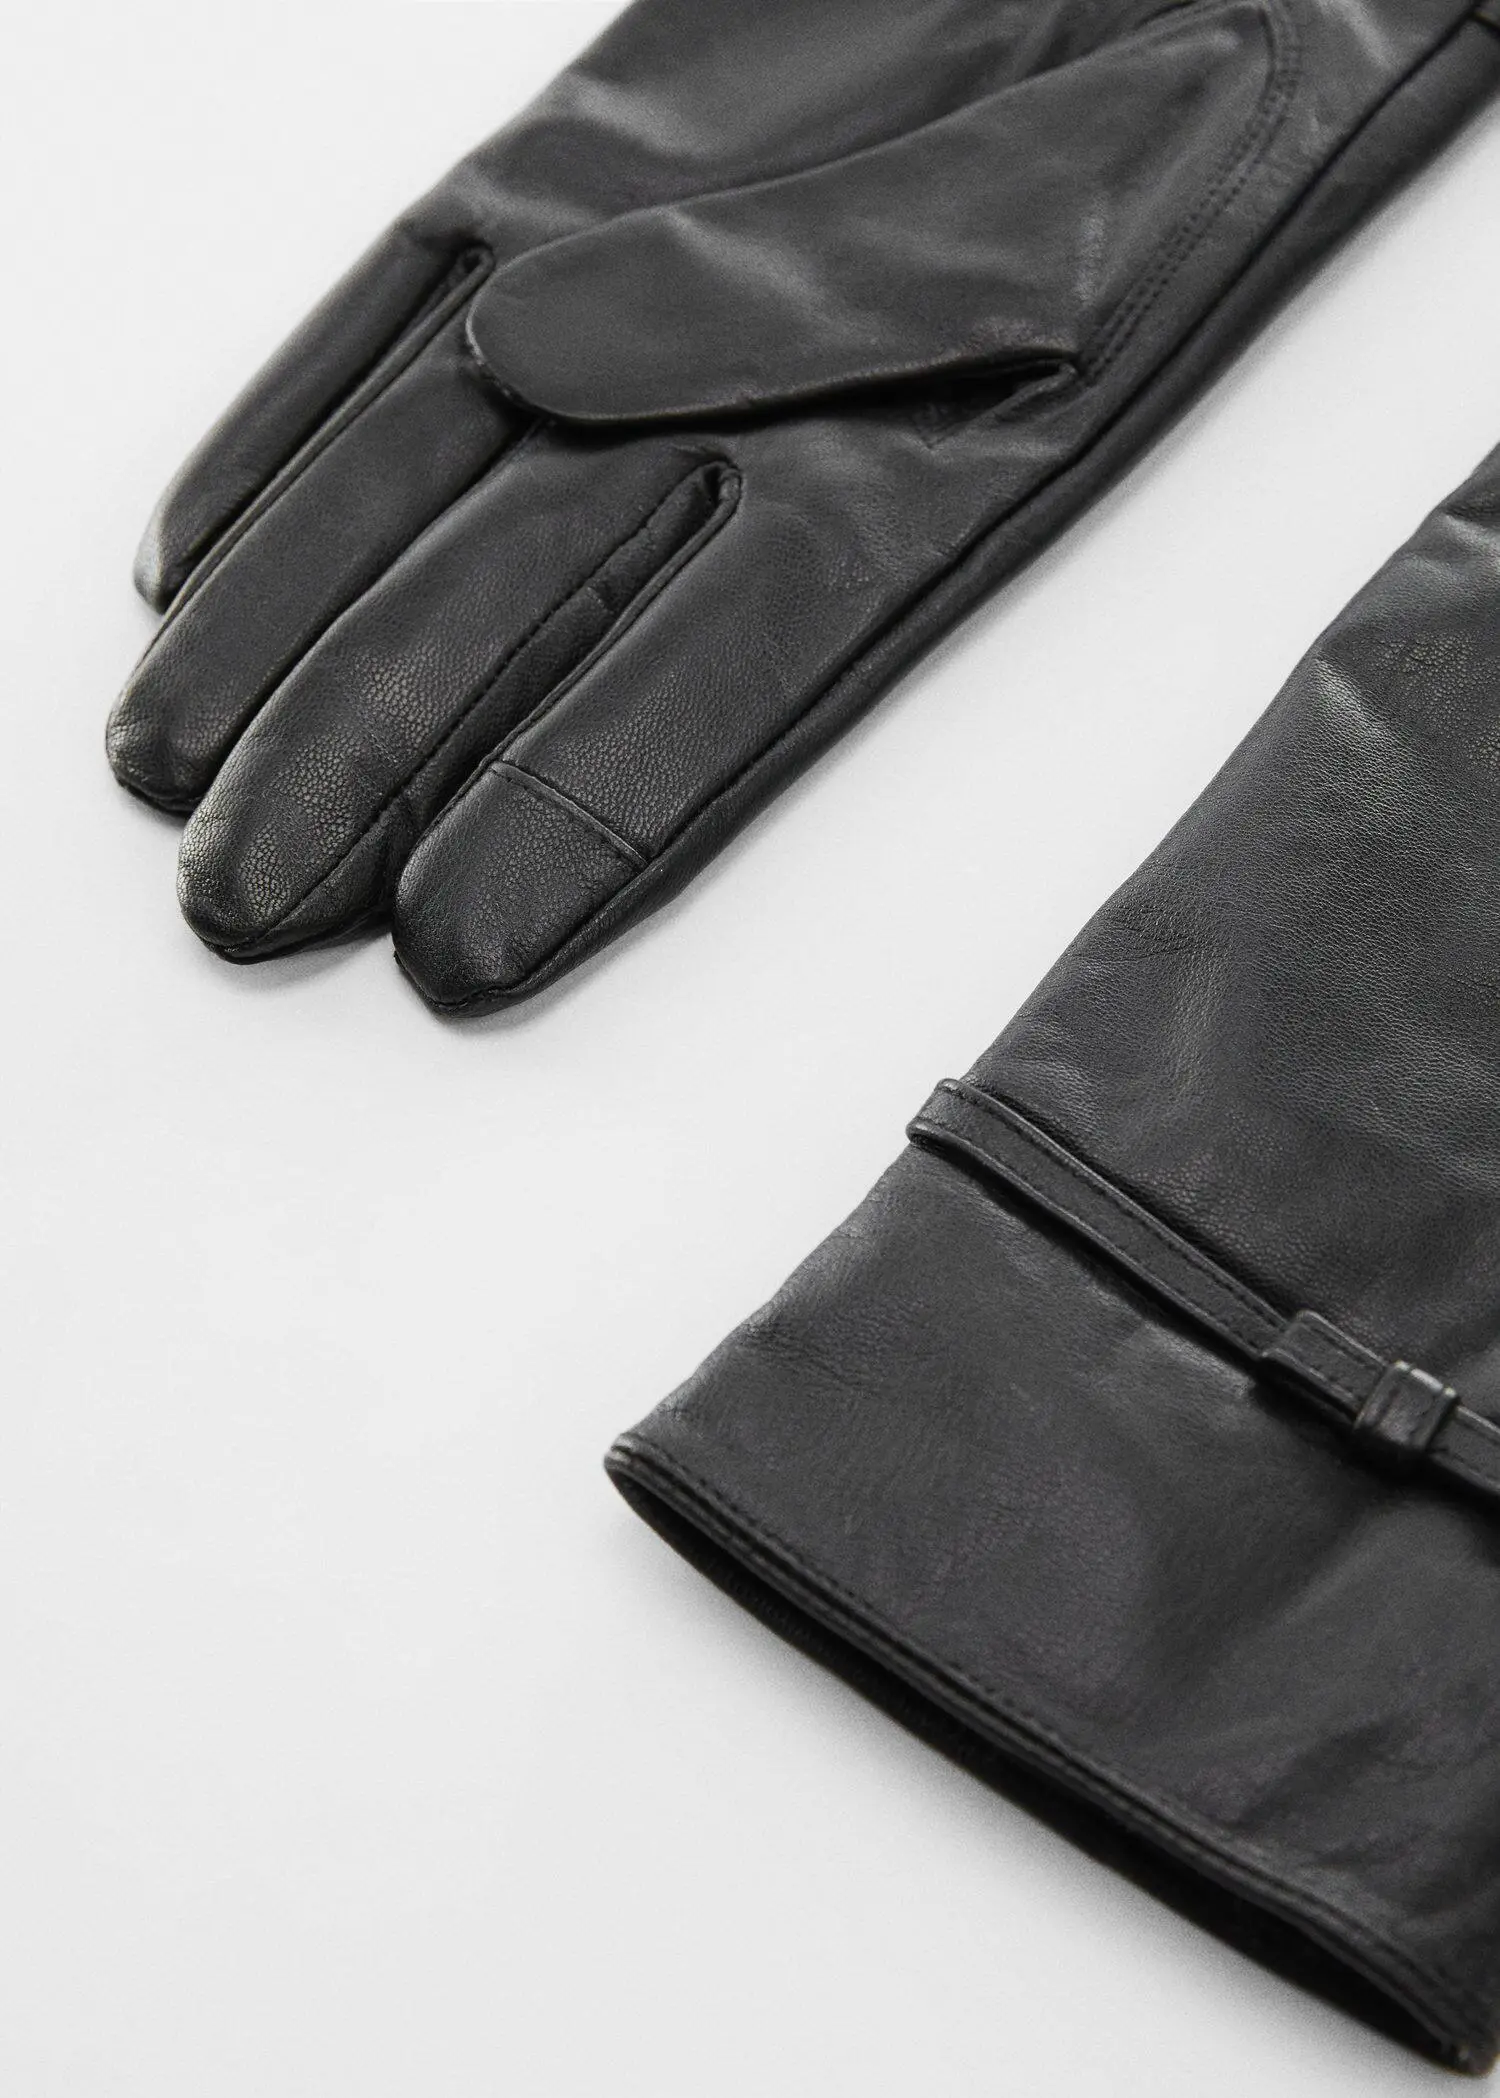 Mango Bow leather gloves. 3